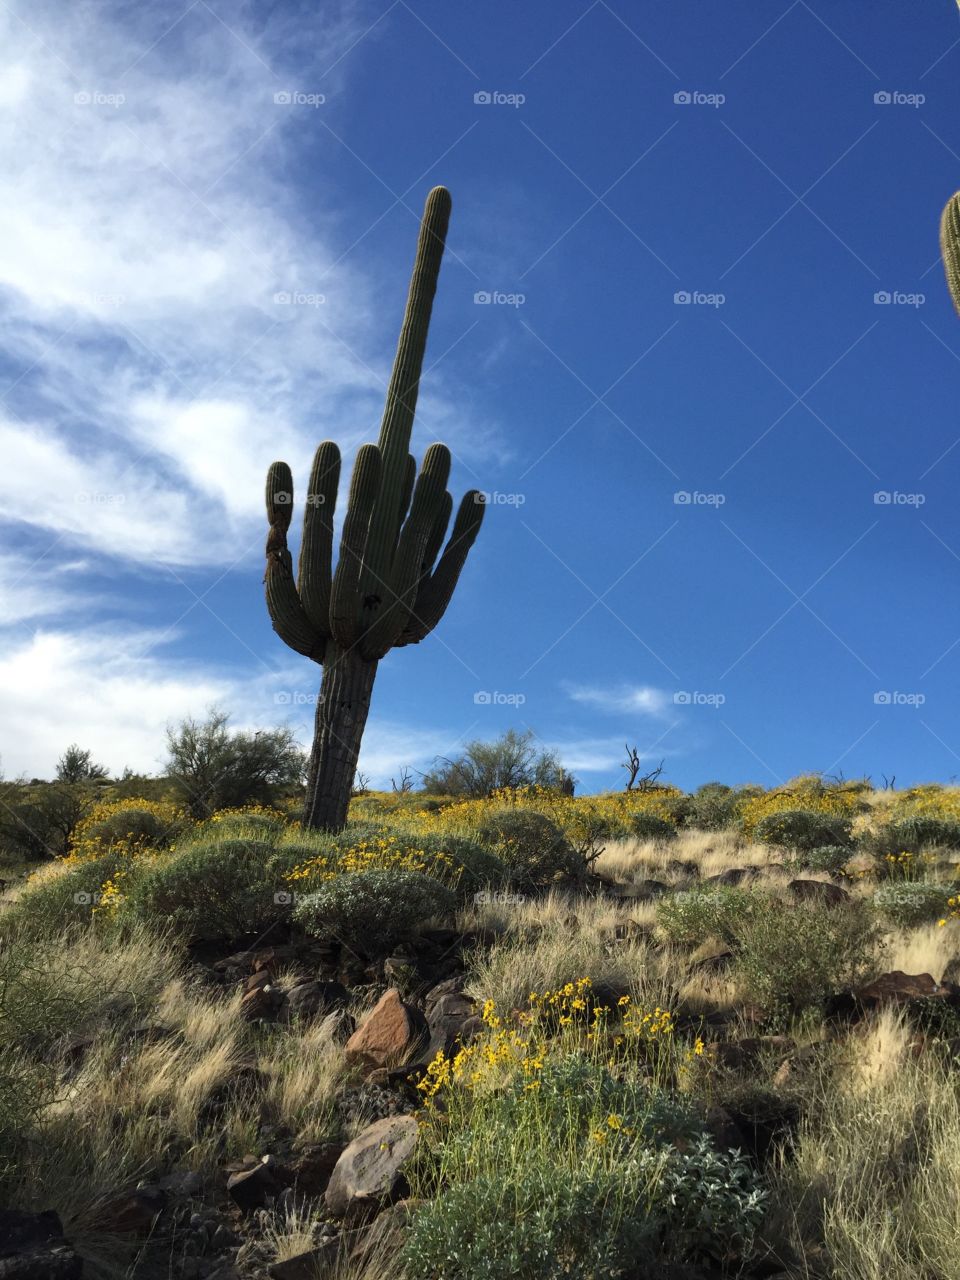 Saguaro cactus against blue sky.